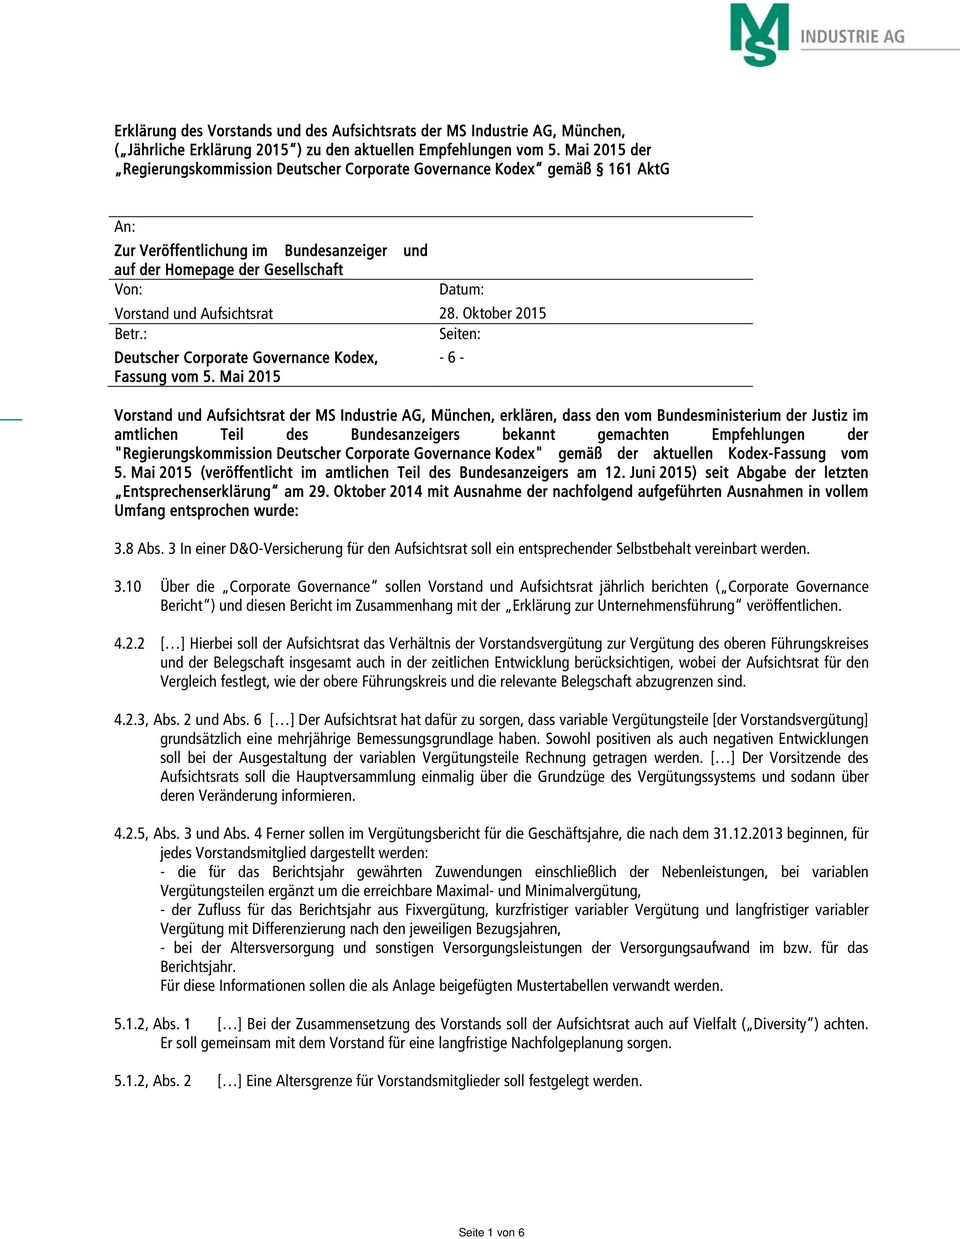 Aufsichtsrat 28. Oktober 2015 Betr.: Seiten: Deutscher Corporate Governance Kodex, -6- Fassung vom 5.